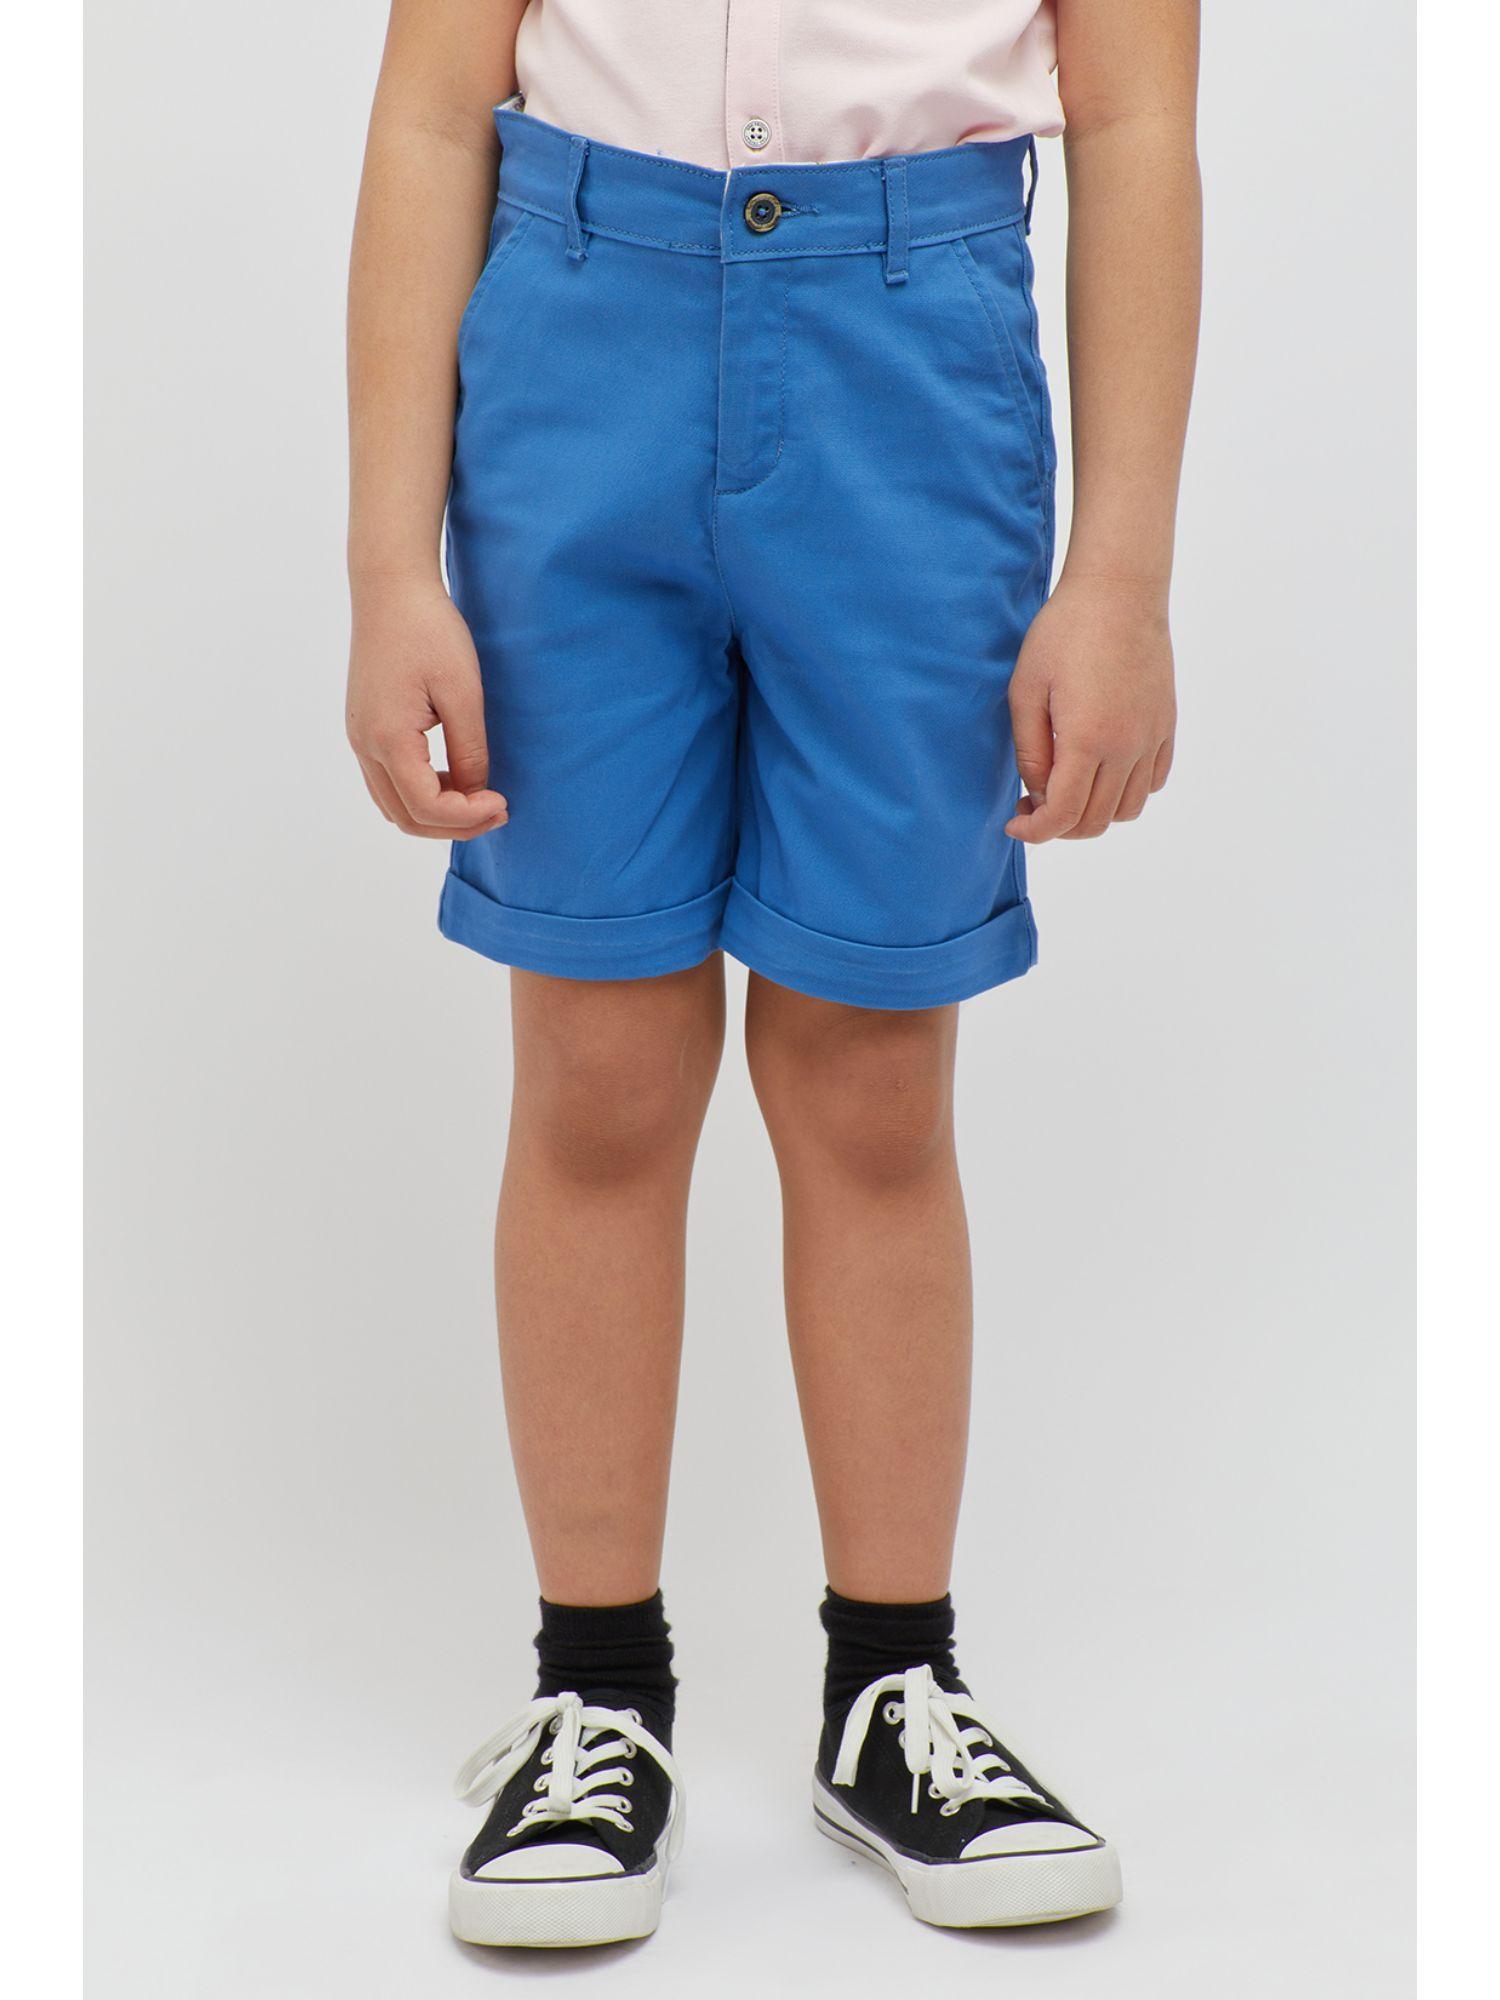 basic blue shorts